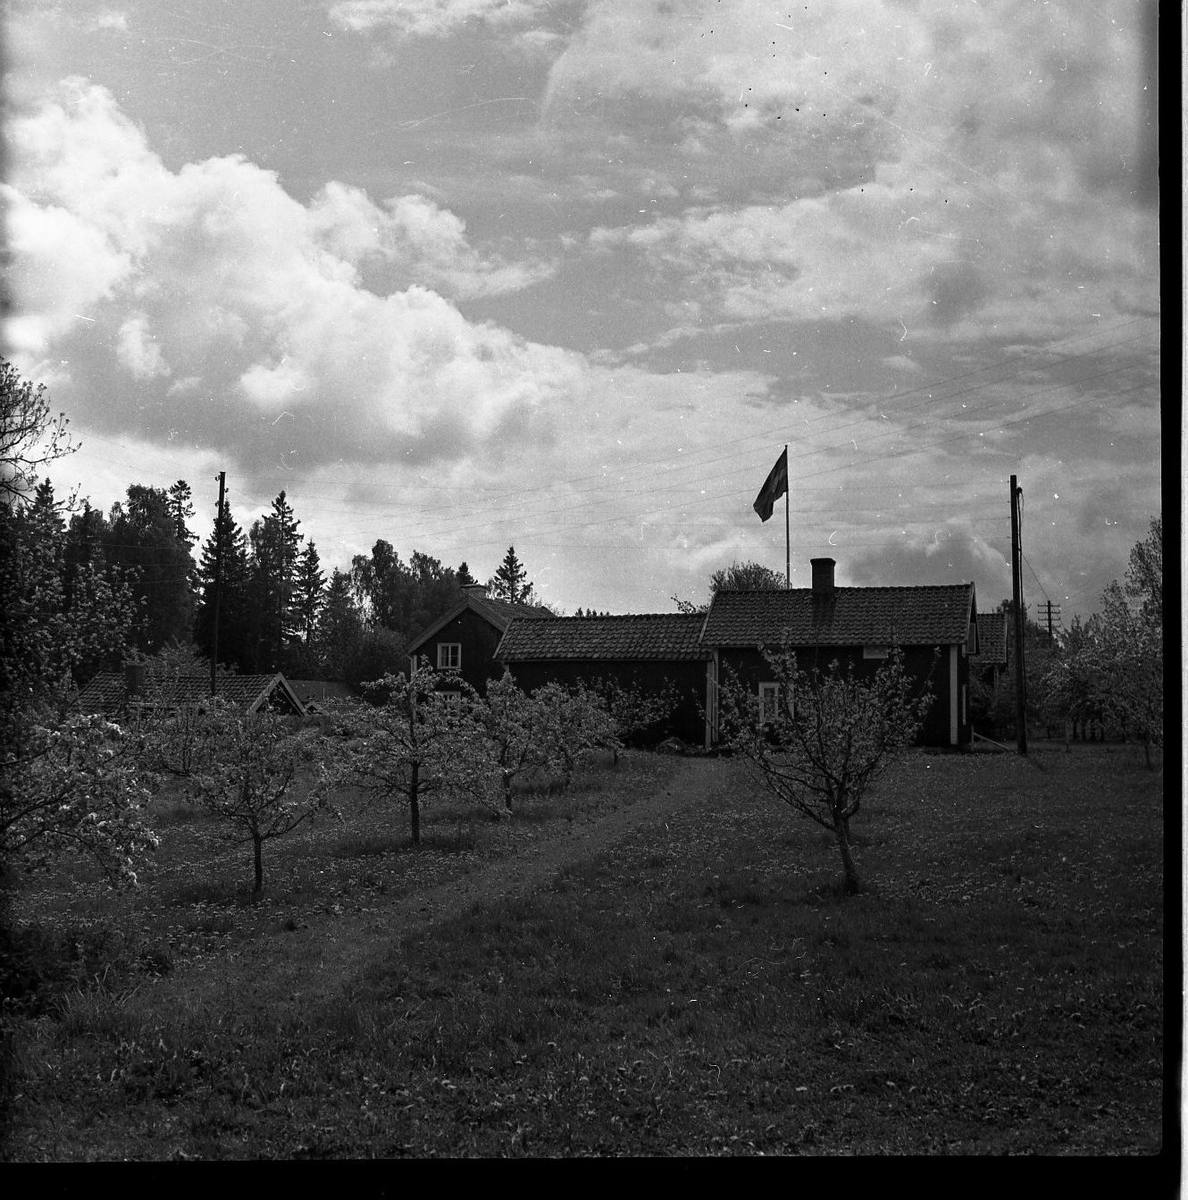 Okänd gård bortom fruktträd. En svensk flagga är hissad inne på gården.